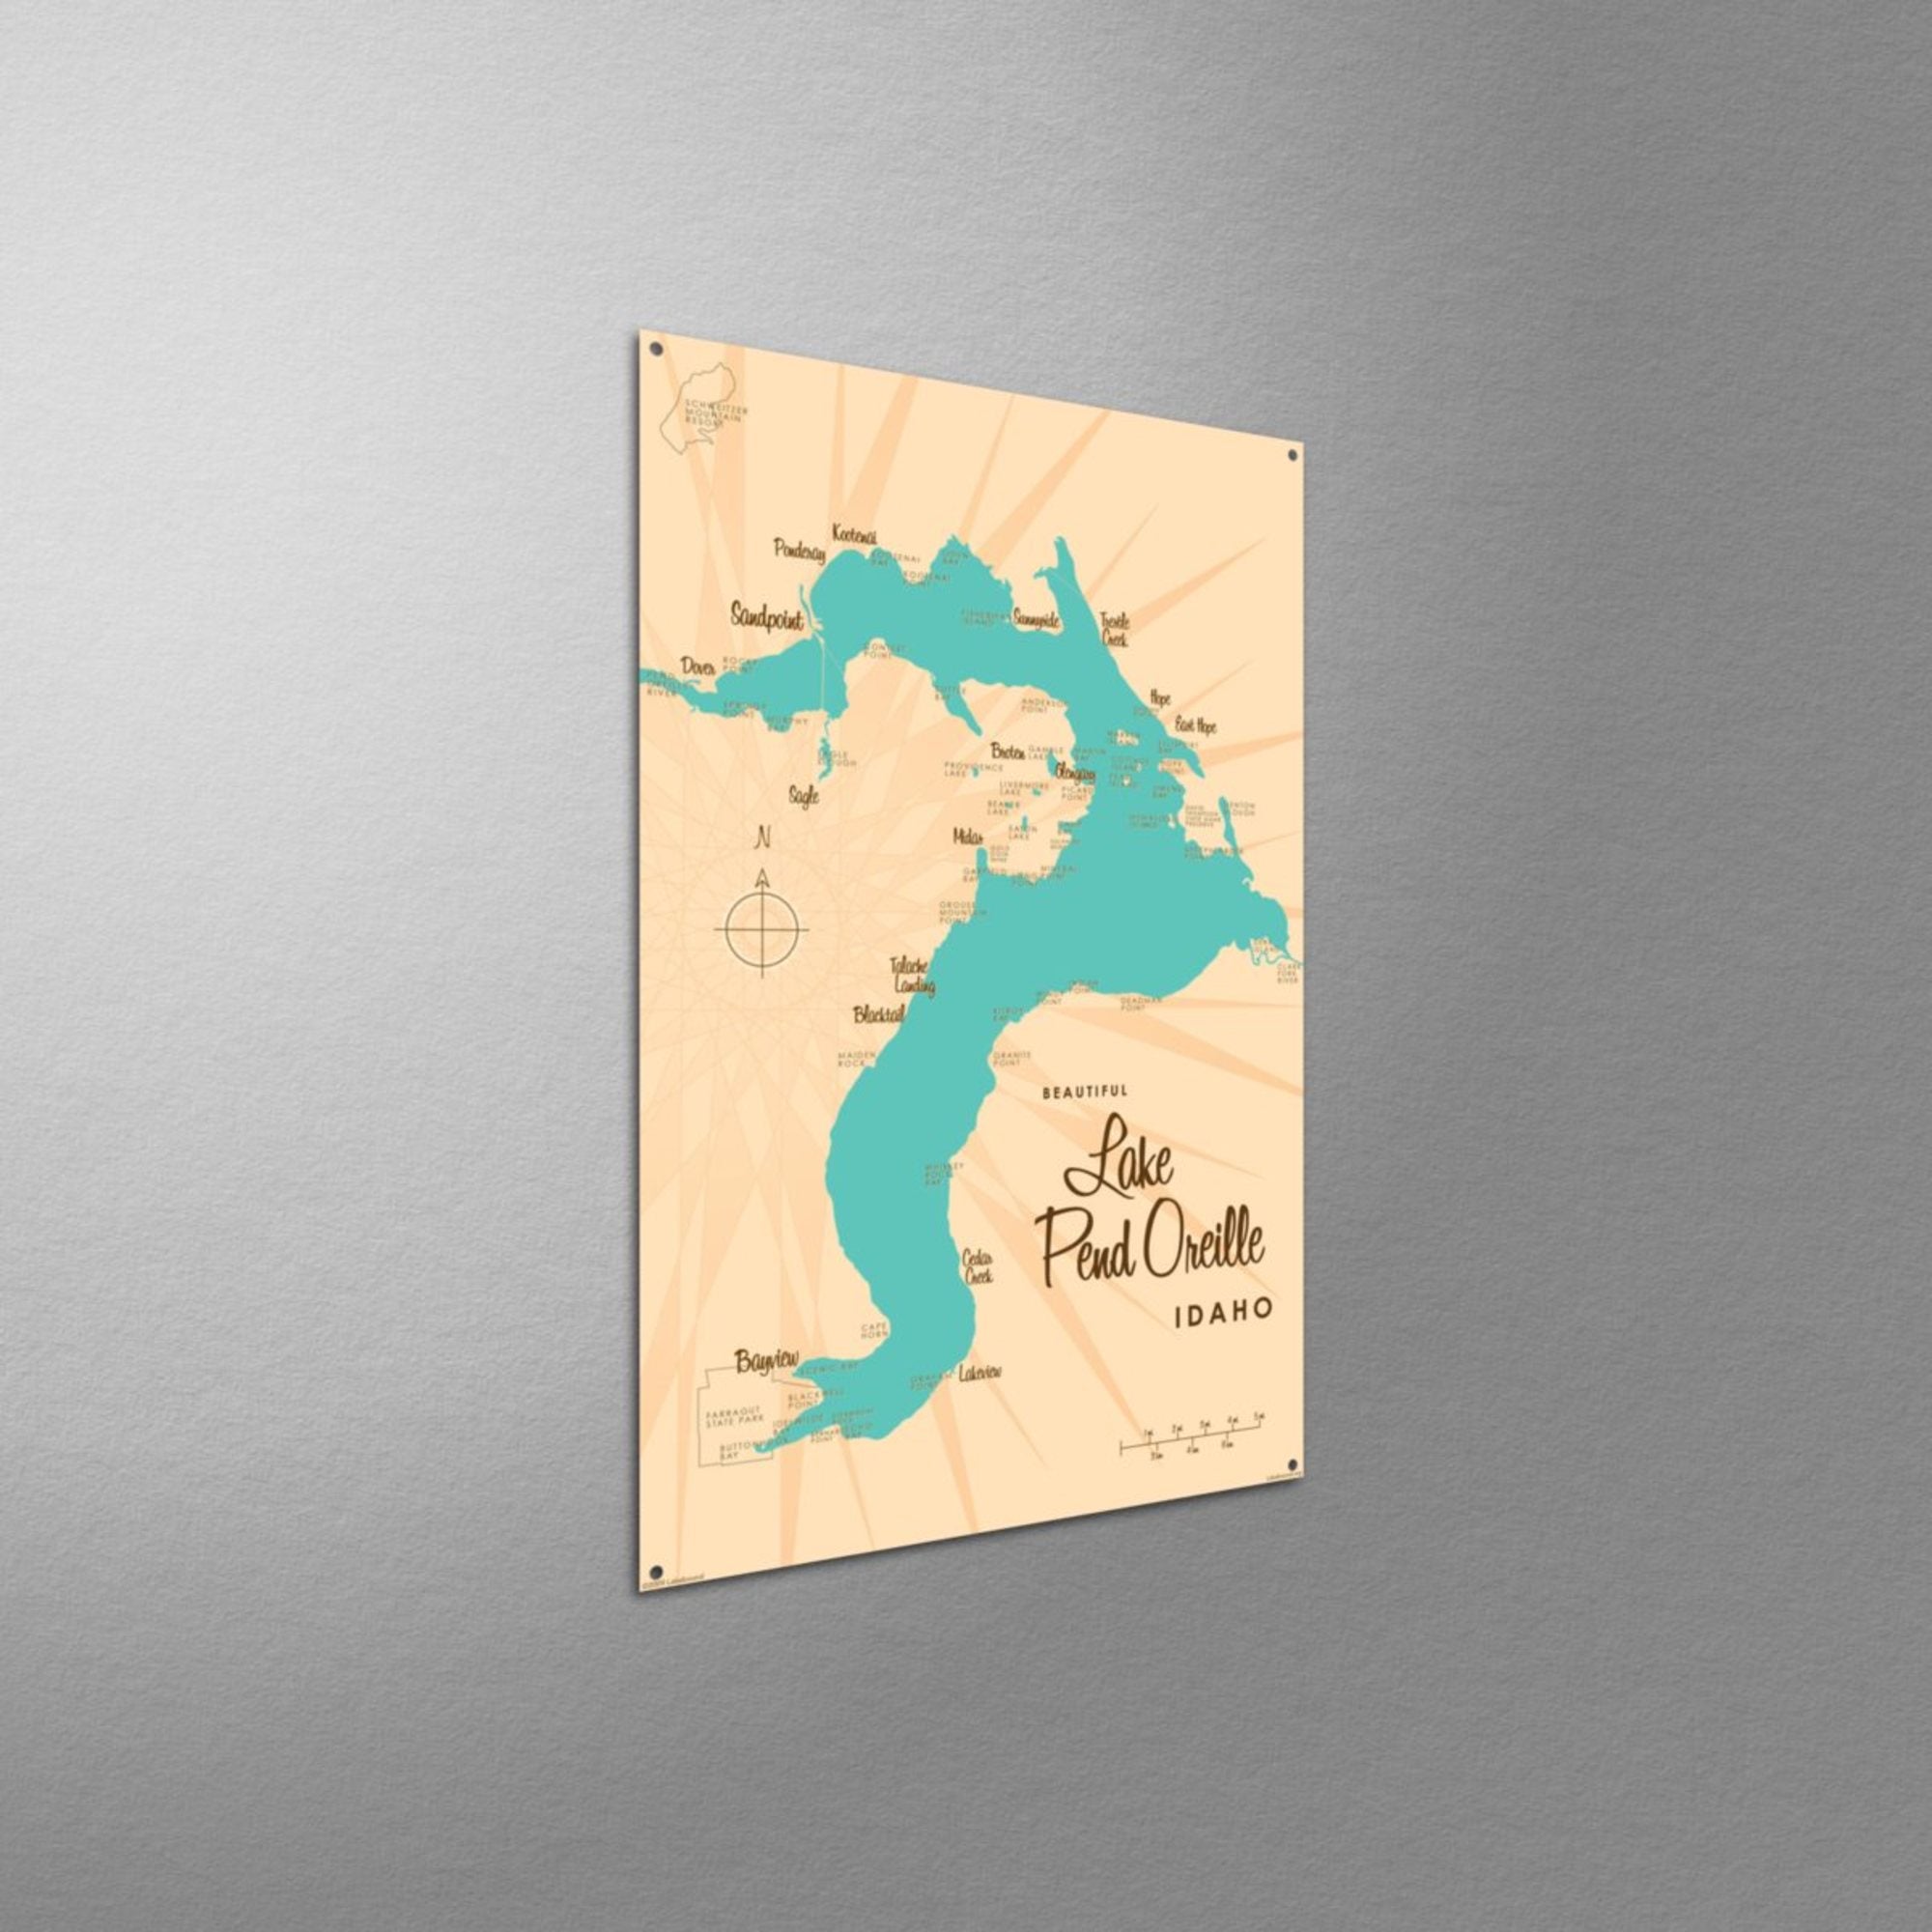 Lake Pend Oreille Idaho, Metal Sign Map Art